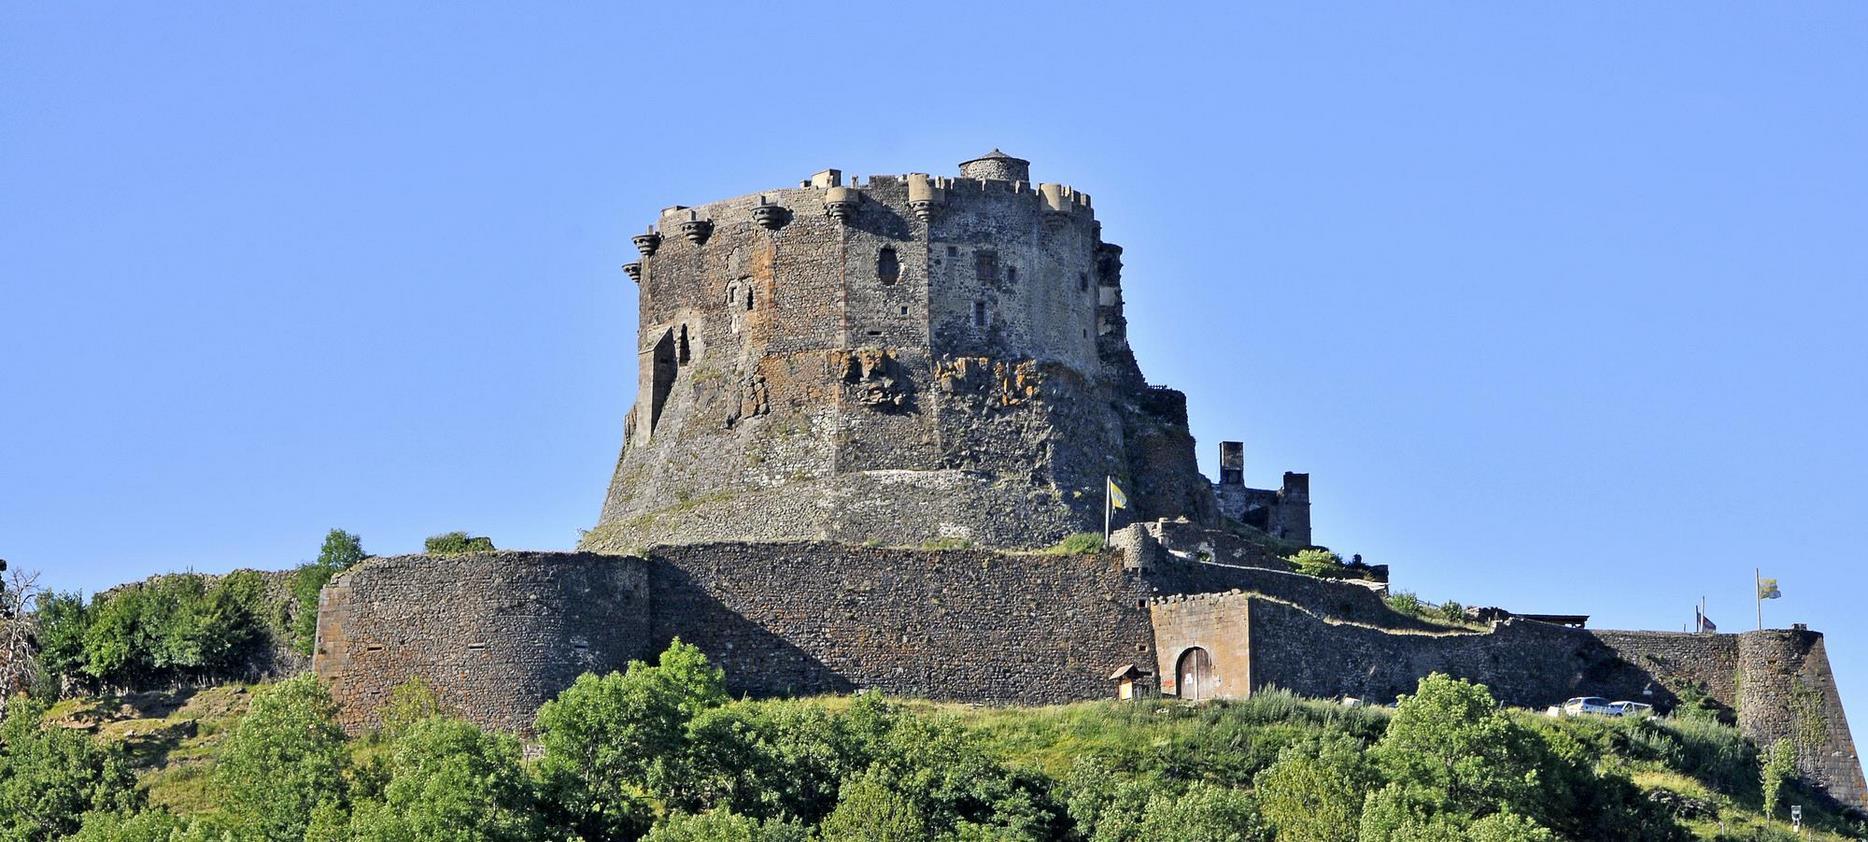 Château de Murol - Forteresse du Moyen Age dans le Puy de dôme